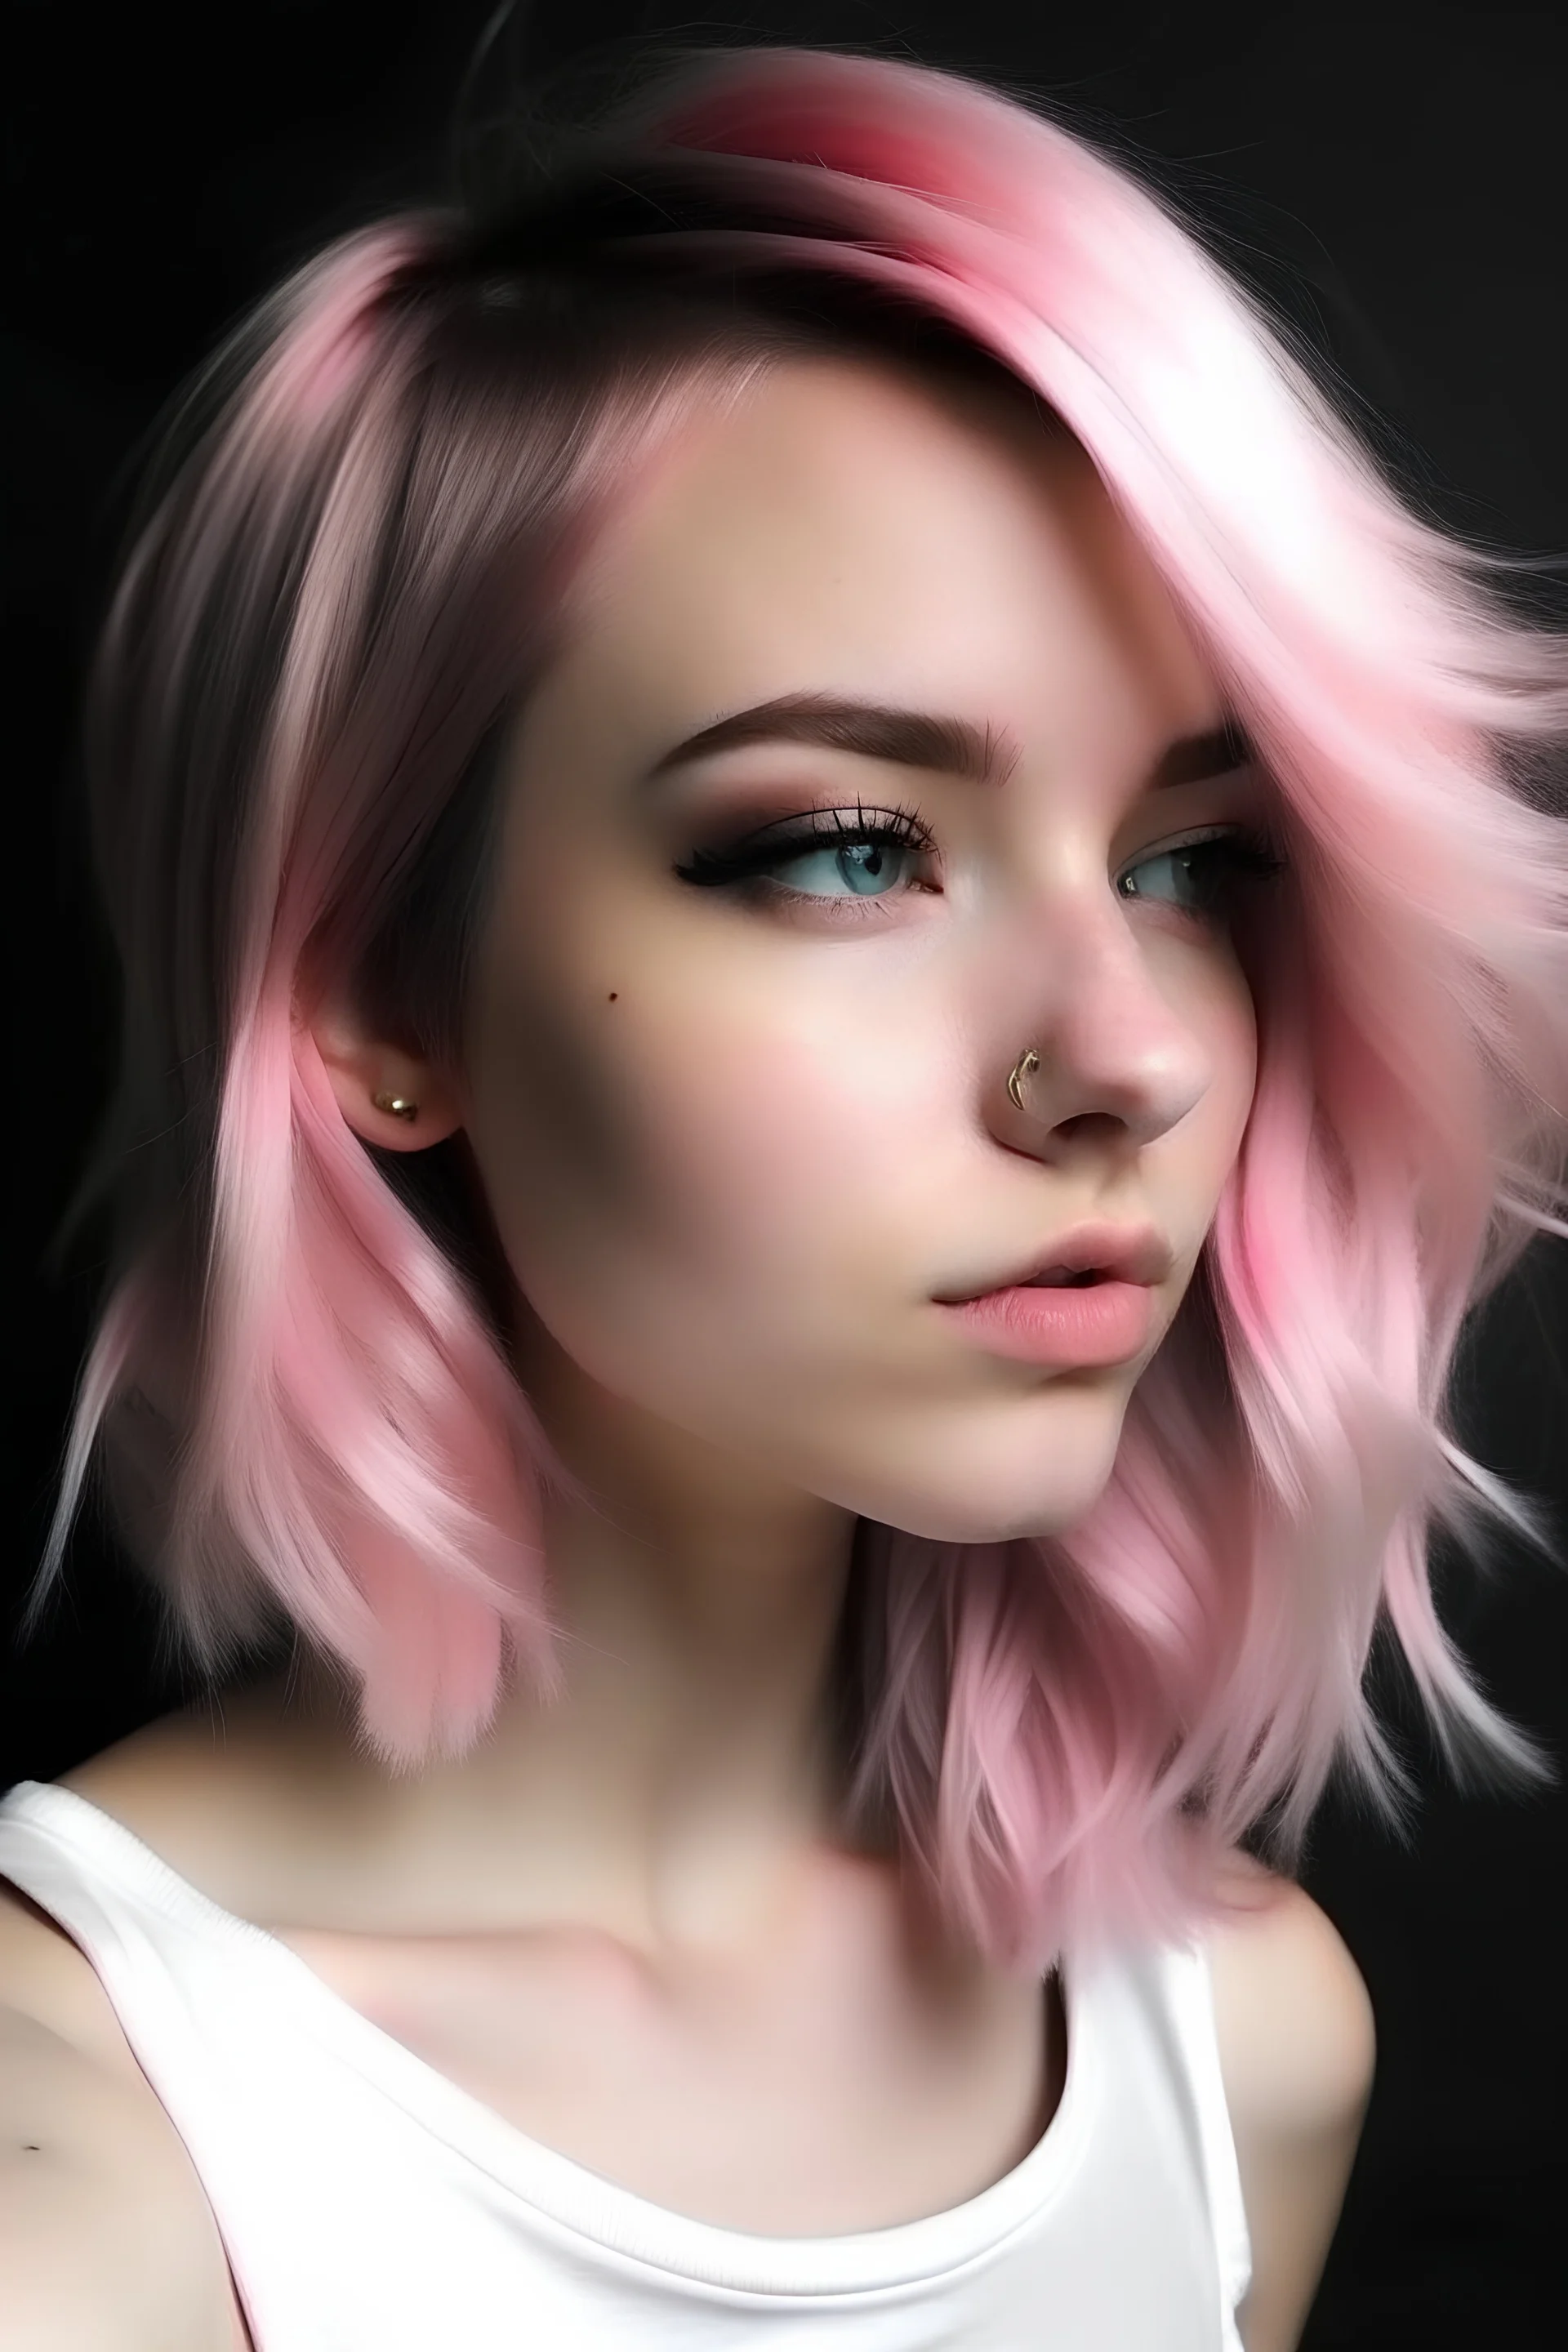 Imagen de chica con mechones de pelo rosado, delgada ,morena llegando a blanca y con maquillaje simple